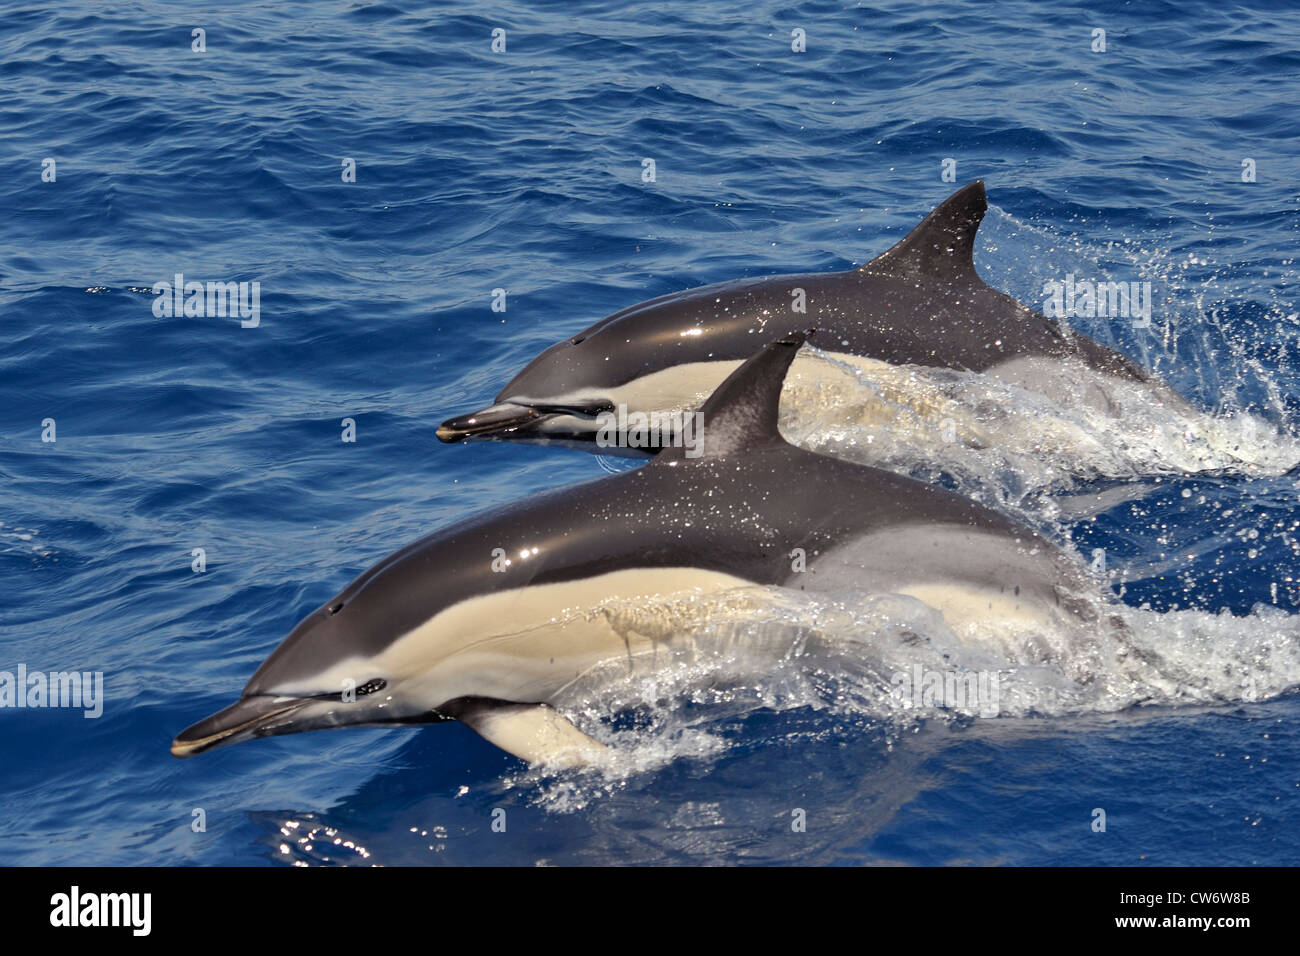 Dos de corta picuda Delfines Comunes, Delphinus delphis, porpoising juntos, al oeste de la isla de Faial, Azores, Océano Atlántico. Foto de stock